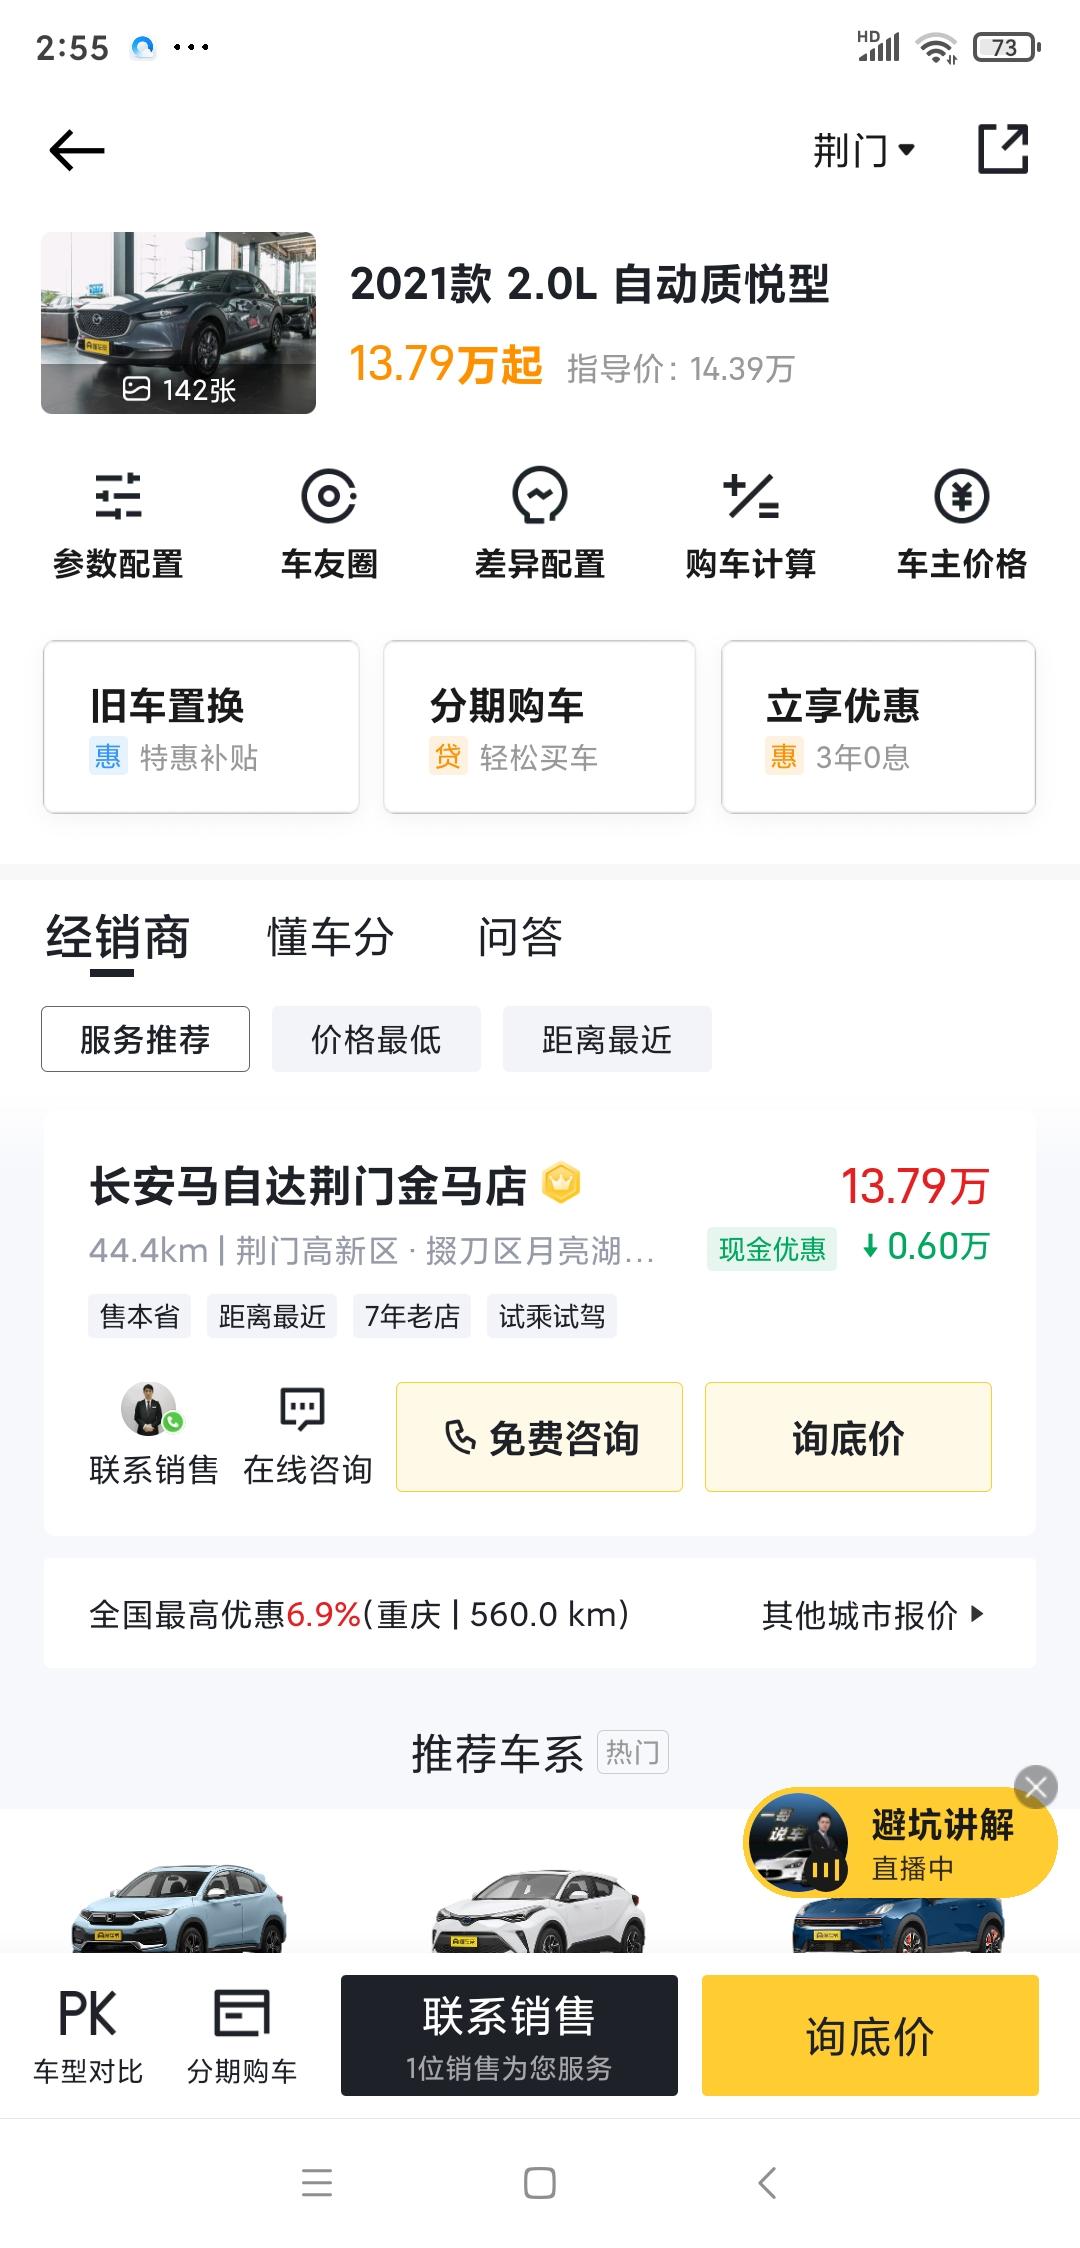 马自达CX-30 坐标湖北荆门，我想买2021款质悦 ，全款多少钱落地合适，跪求答复